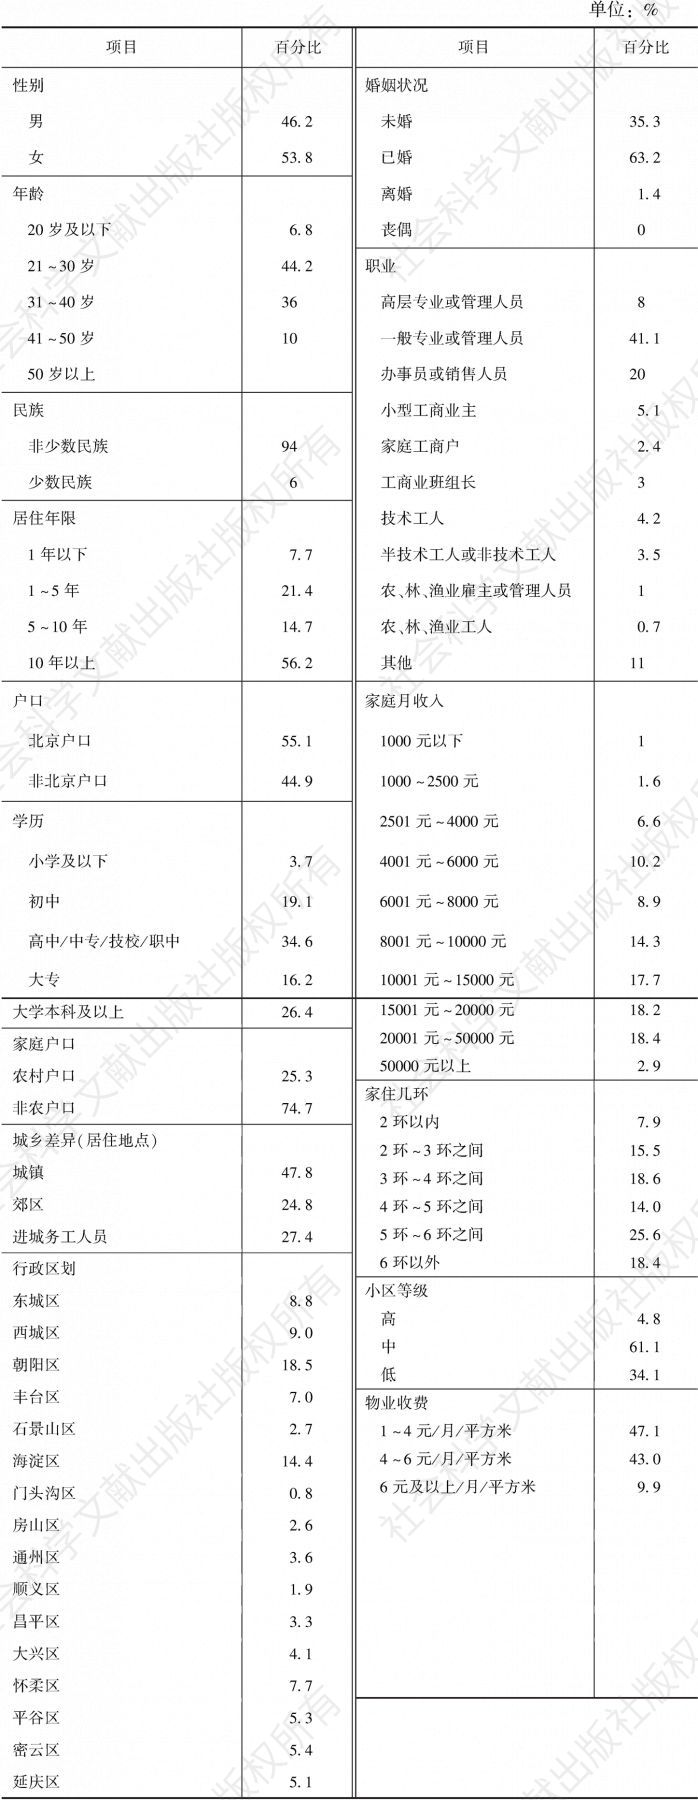 表1 2017年北京市居民心理和谐状况调查人口学信息